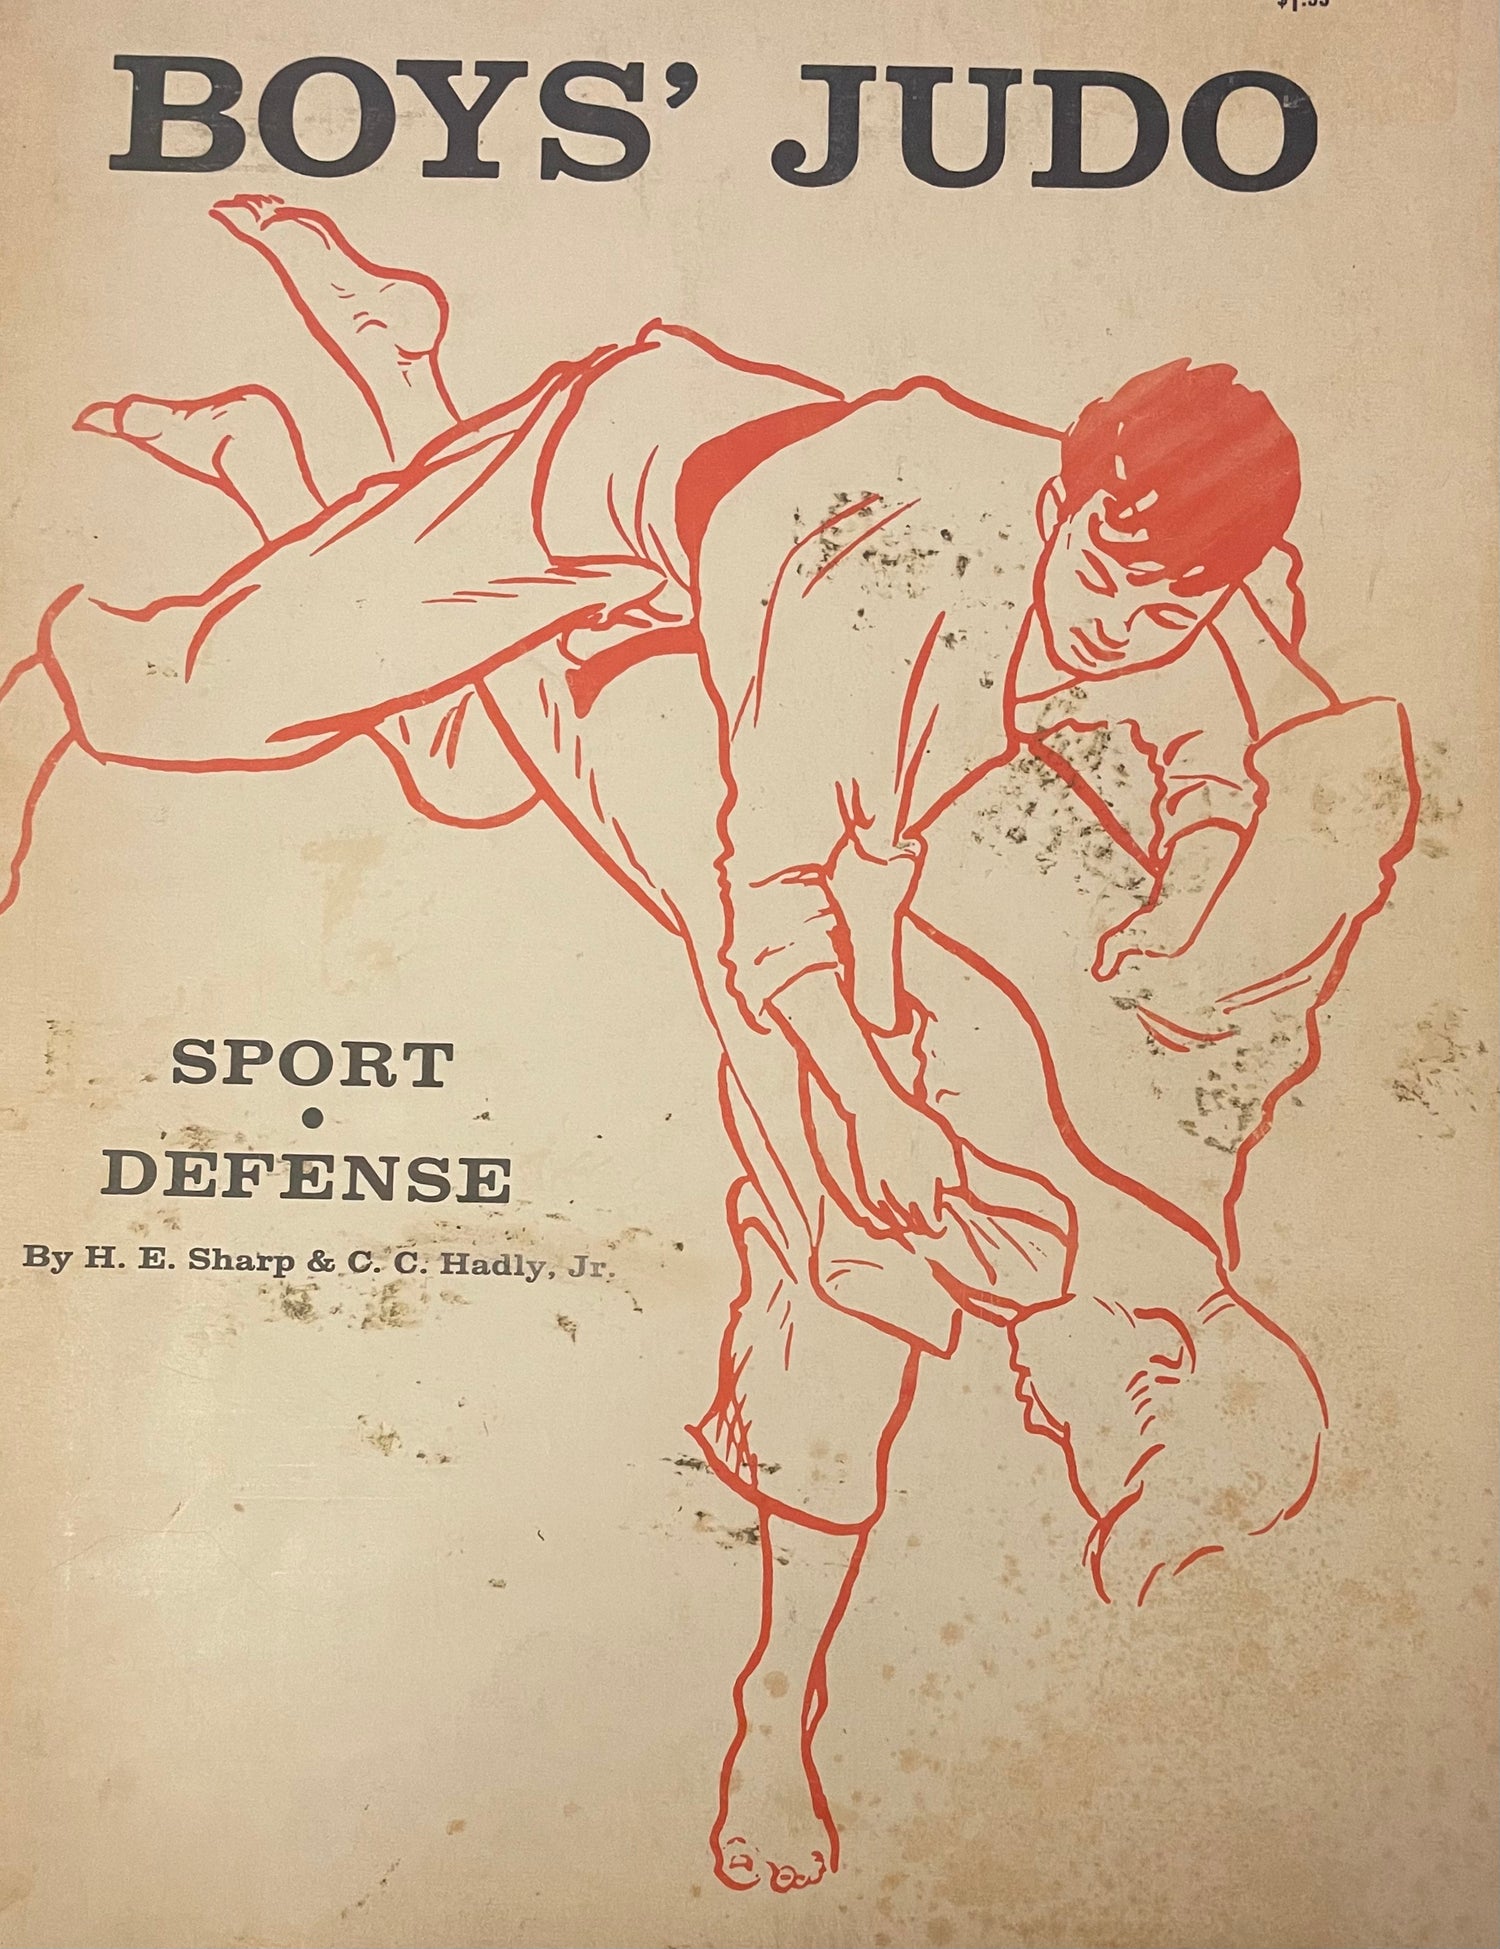 Boys Judo: Libro de deporte y defensa de Harold Sharp (usado)